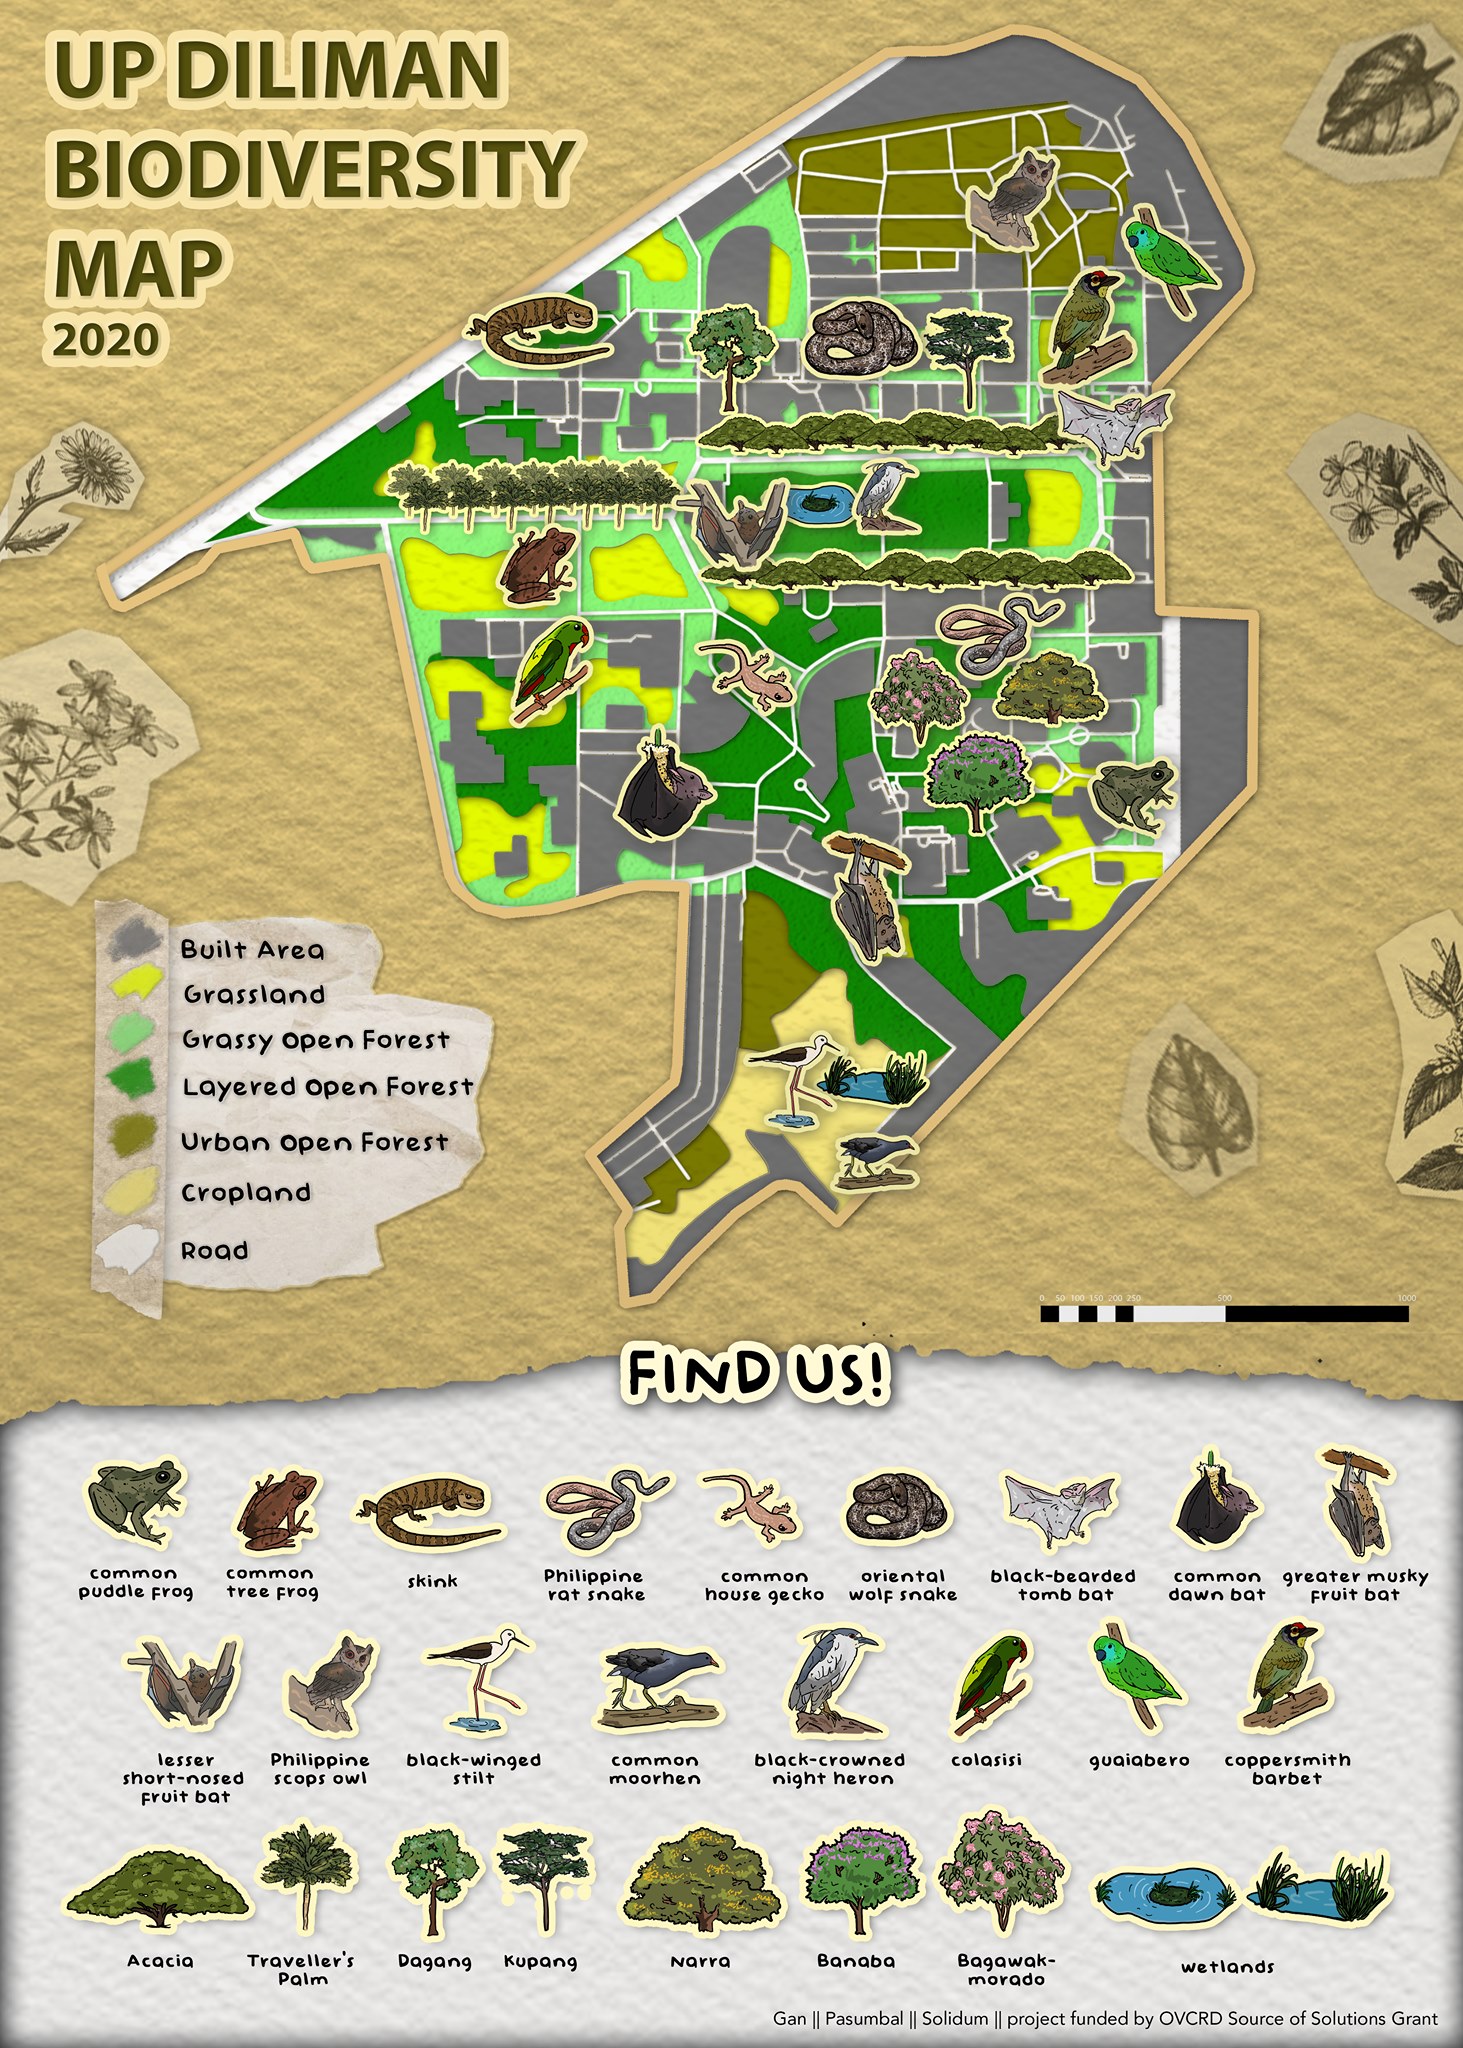 UP Diliman Biodiversity Map (Gan, Pasumbal Solidum) / FB.com/UPWild